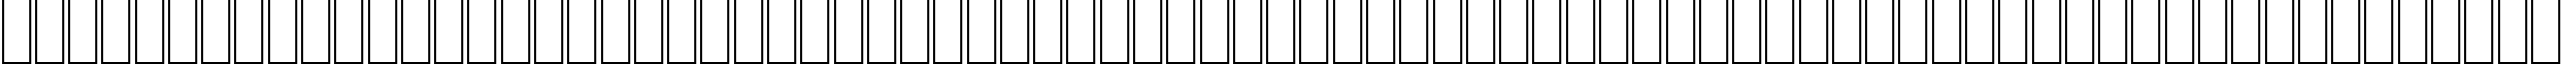 Пример написания английского алфавита шрифтом AGA Mashq Regular